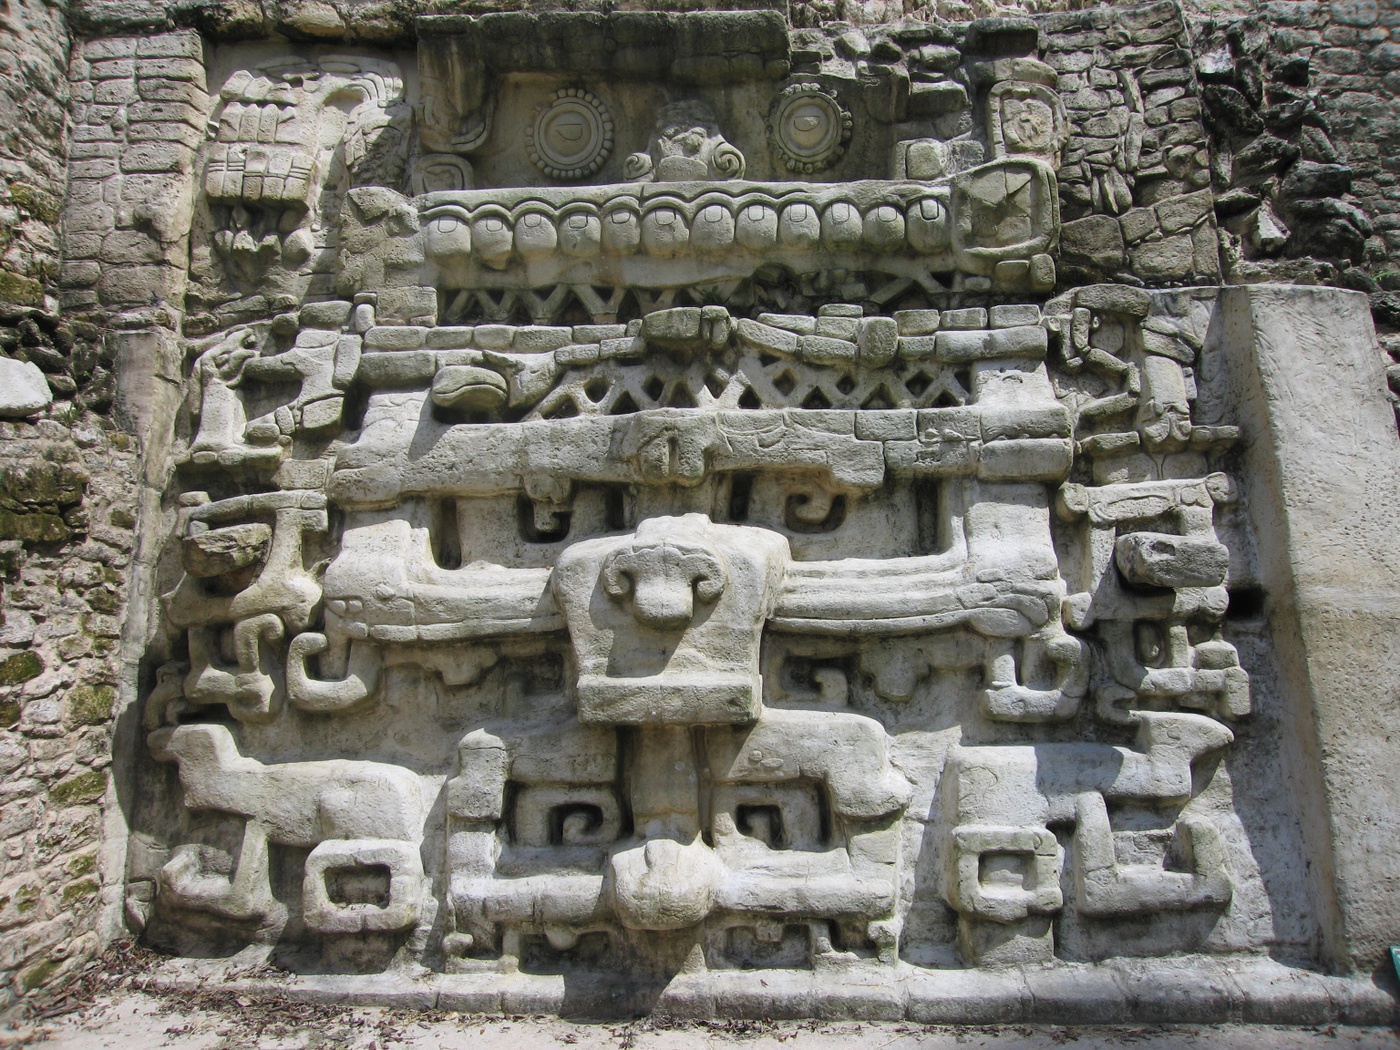 Weniger vorhersehbare Regenfälle spielten wichtige Rolle beim Niedergang der Maya